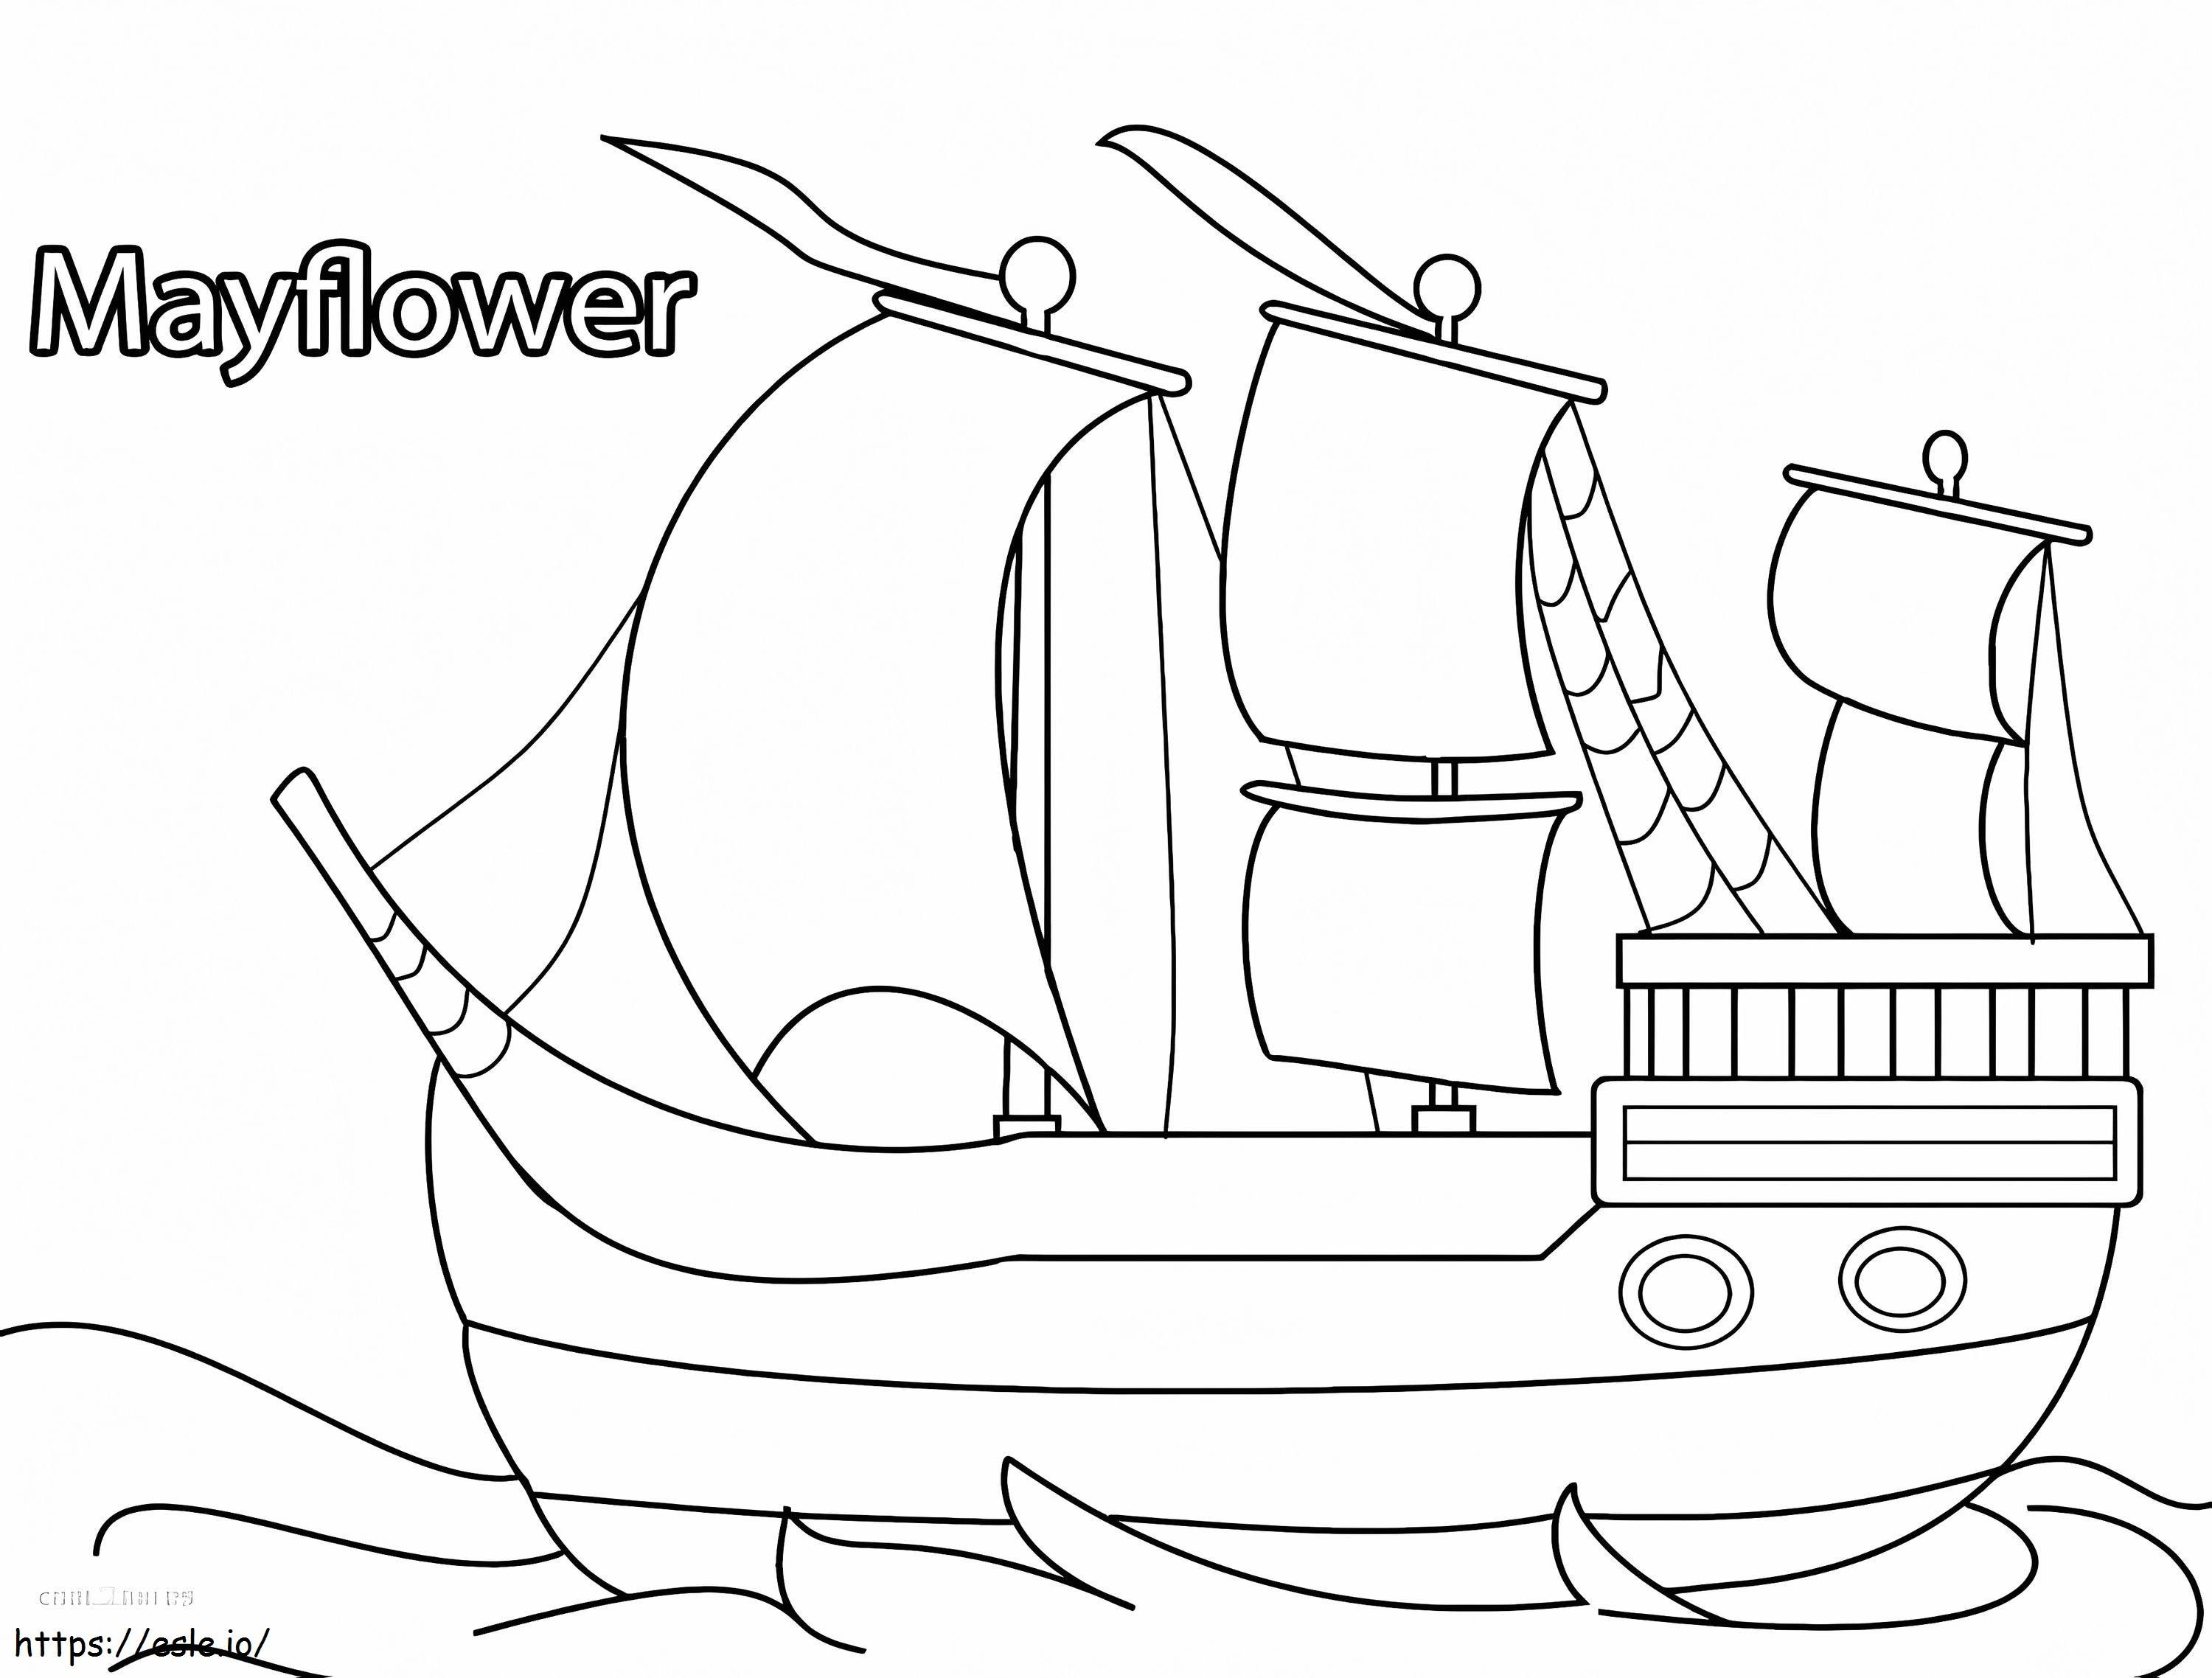 Mayflower 4 da colorare